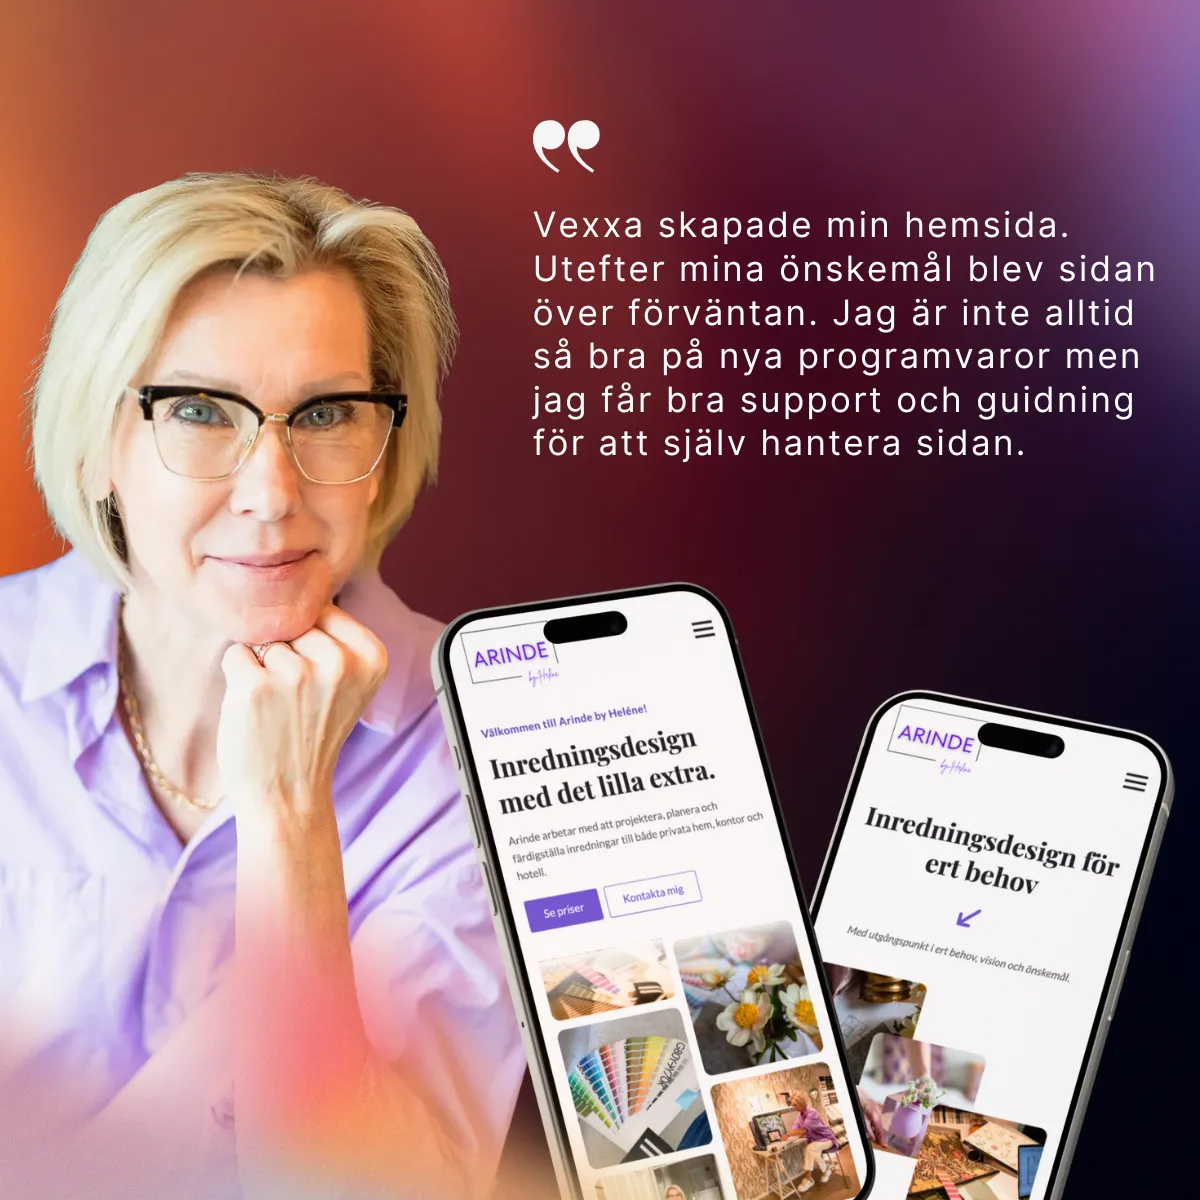 Recension från Heléne Sundström